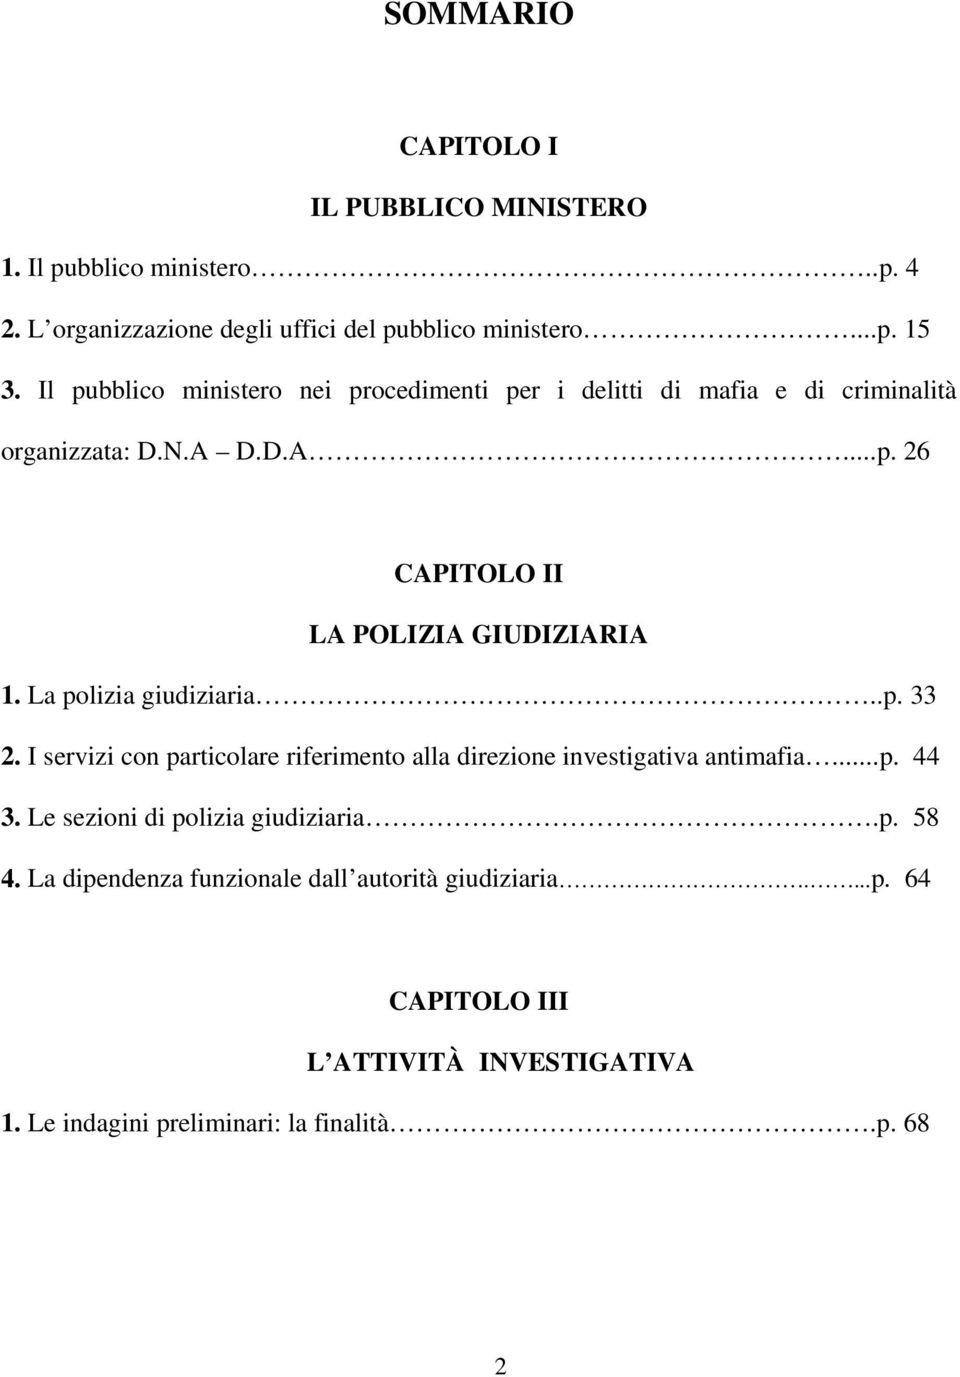 La polizia giudiziaria..p. 33 2. I servizi con particolare riferimento alla direzione investigativa antimafia...p. 44 3.